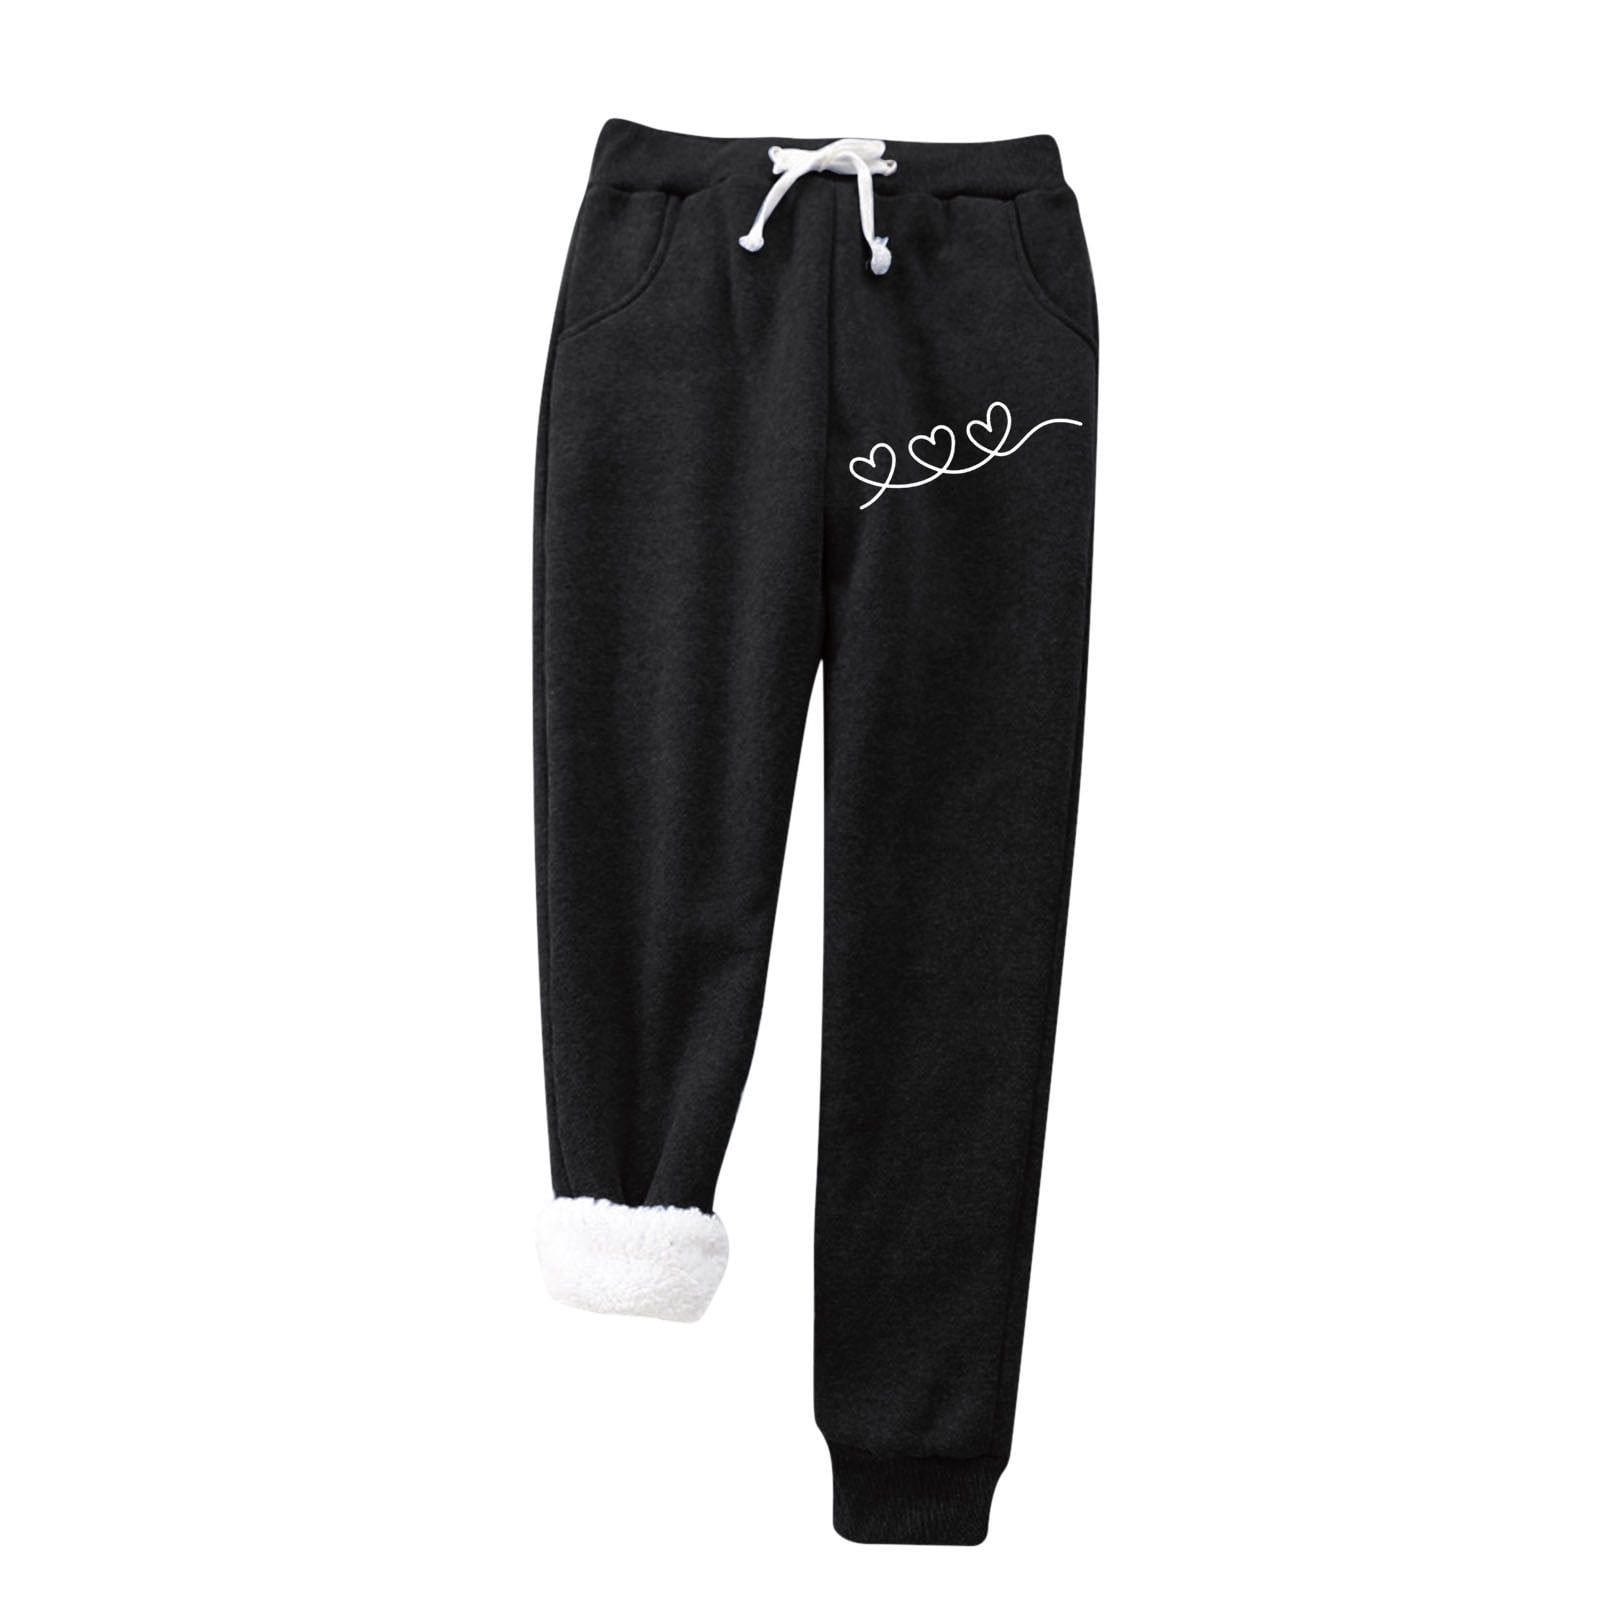 Fsqjgq Cotton Jogging Pants for Women Plus Warm Velvet with Pockets ...